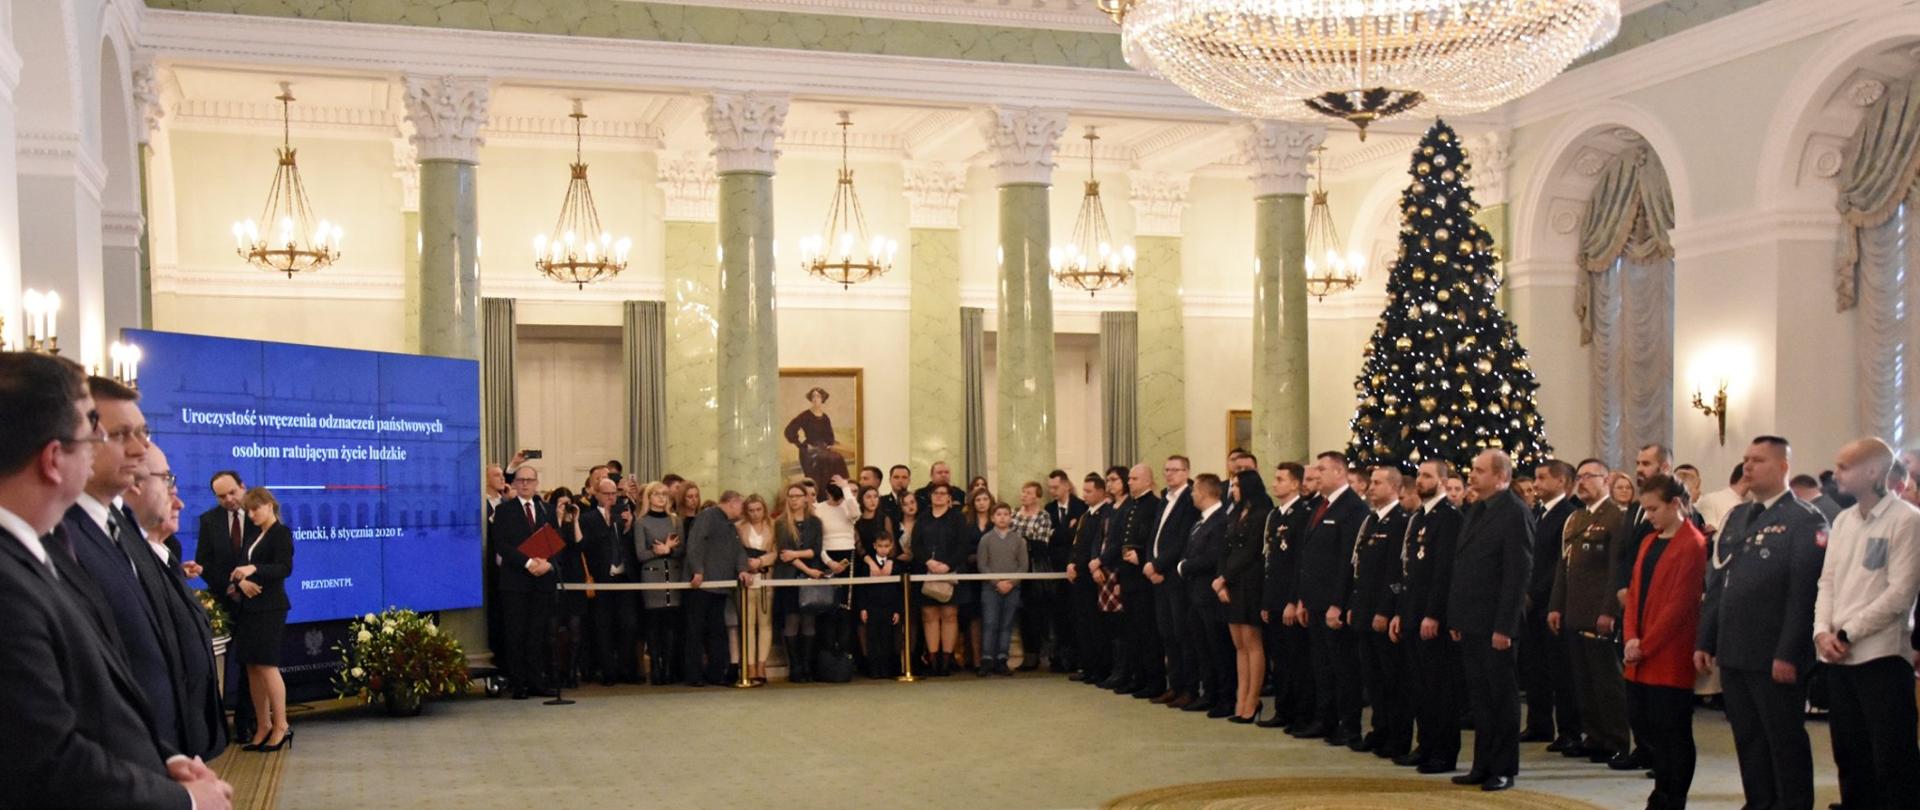 Uroczystość wręczenia odznaczeń w Pałacu Prezydenckim.